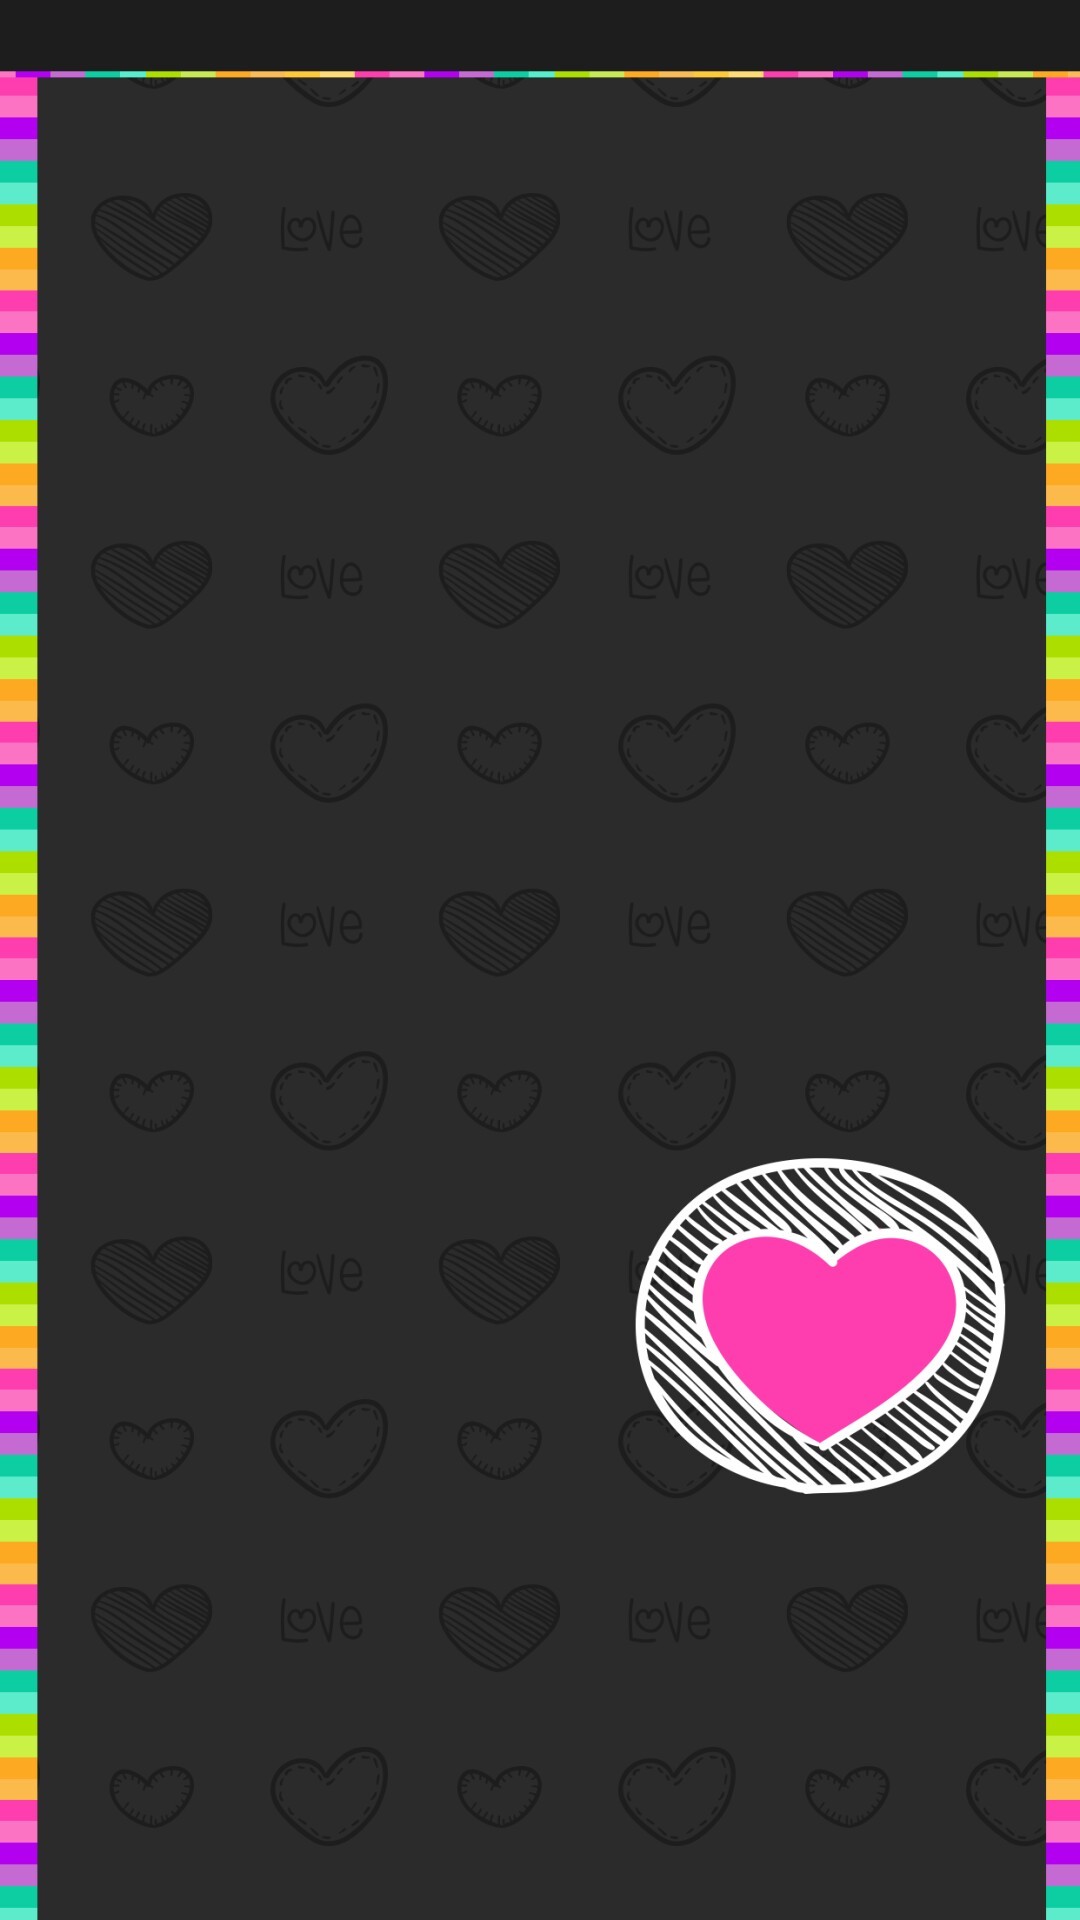 1080x1920 iPhone Wall: Valentine's Day tjn